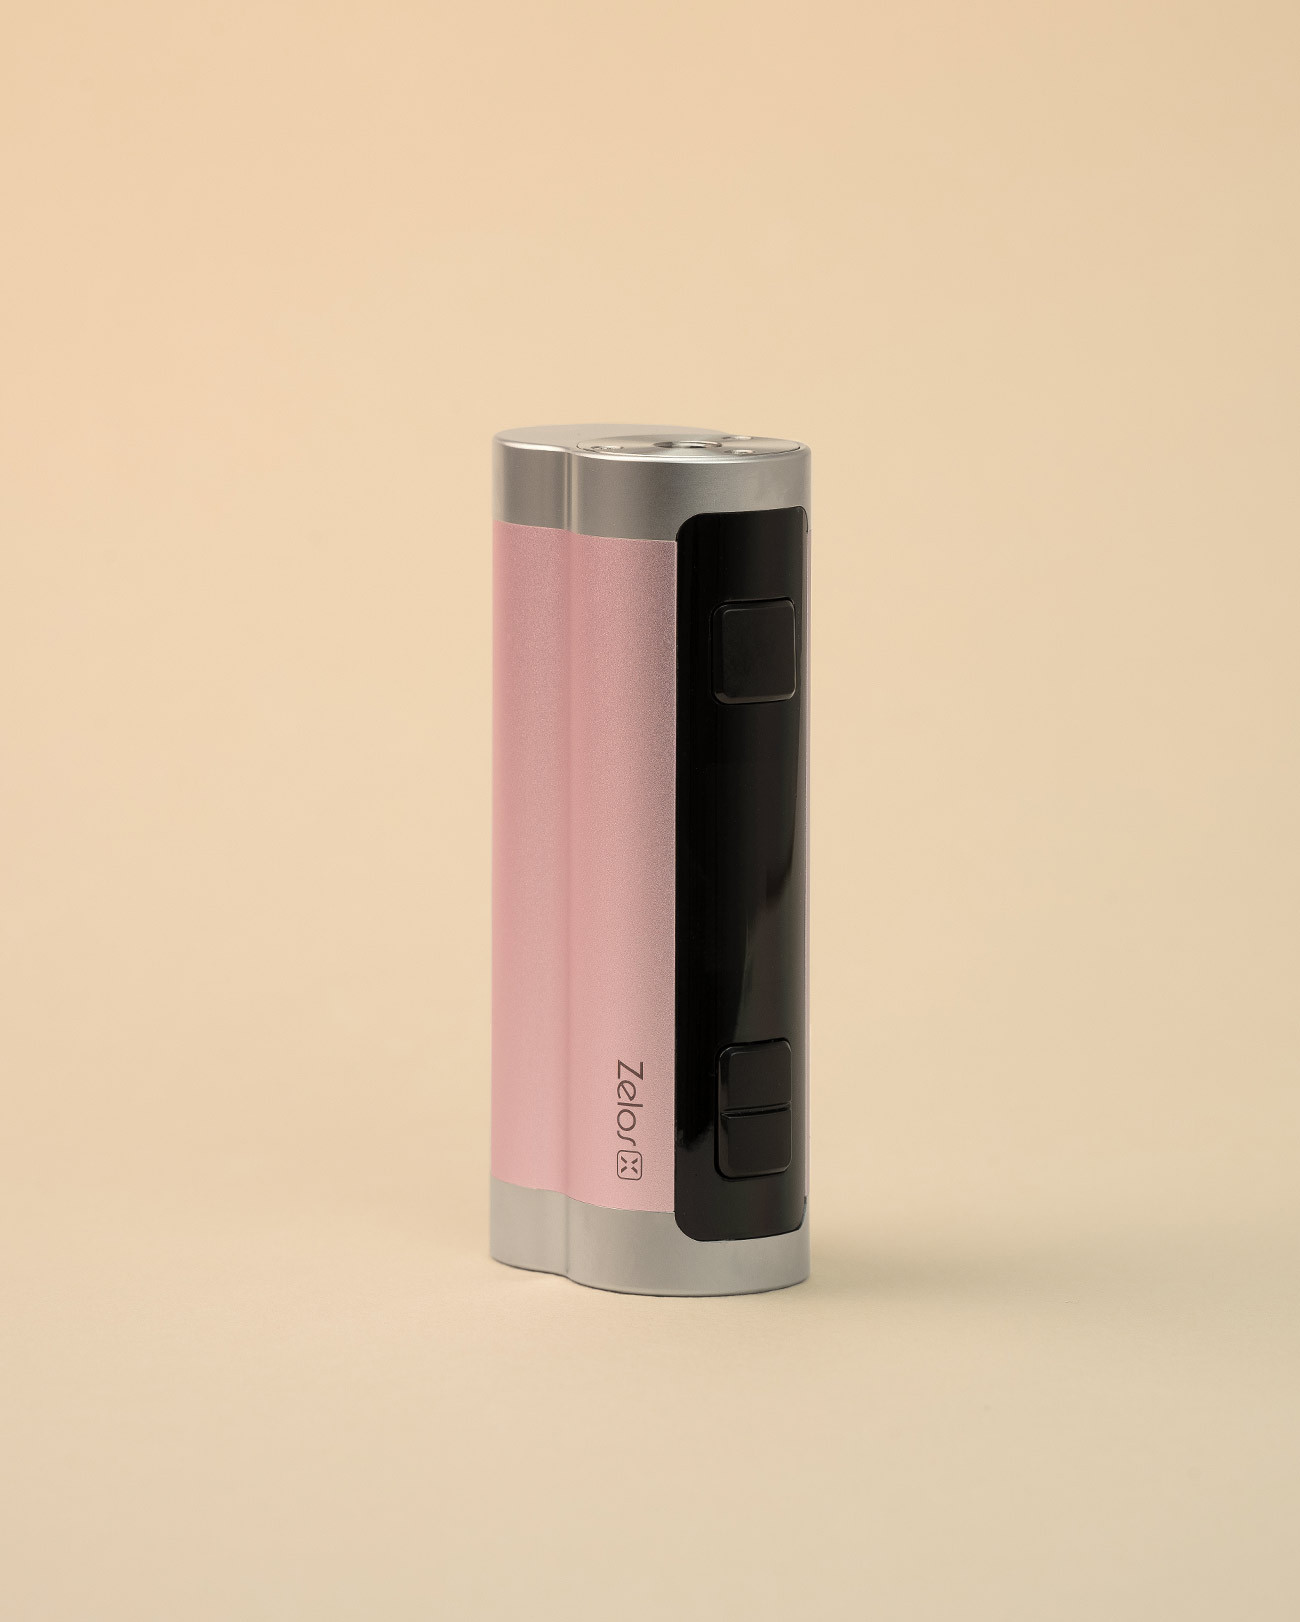 Box Zelos X 80 W couleur pink par Aspire